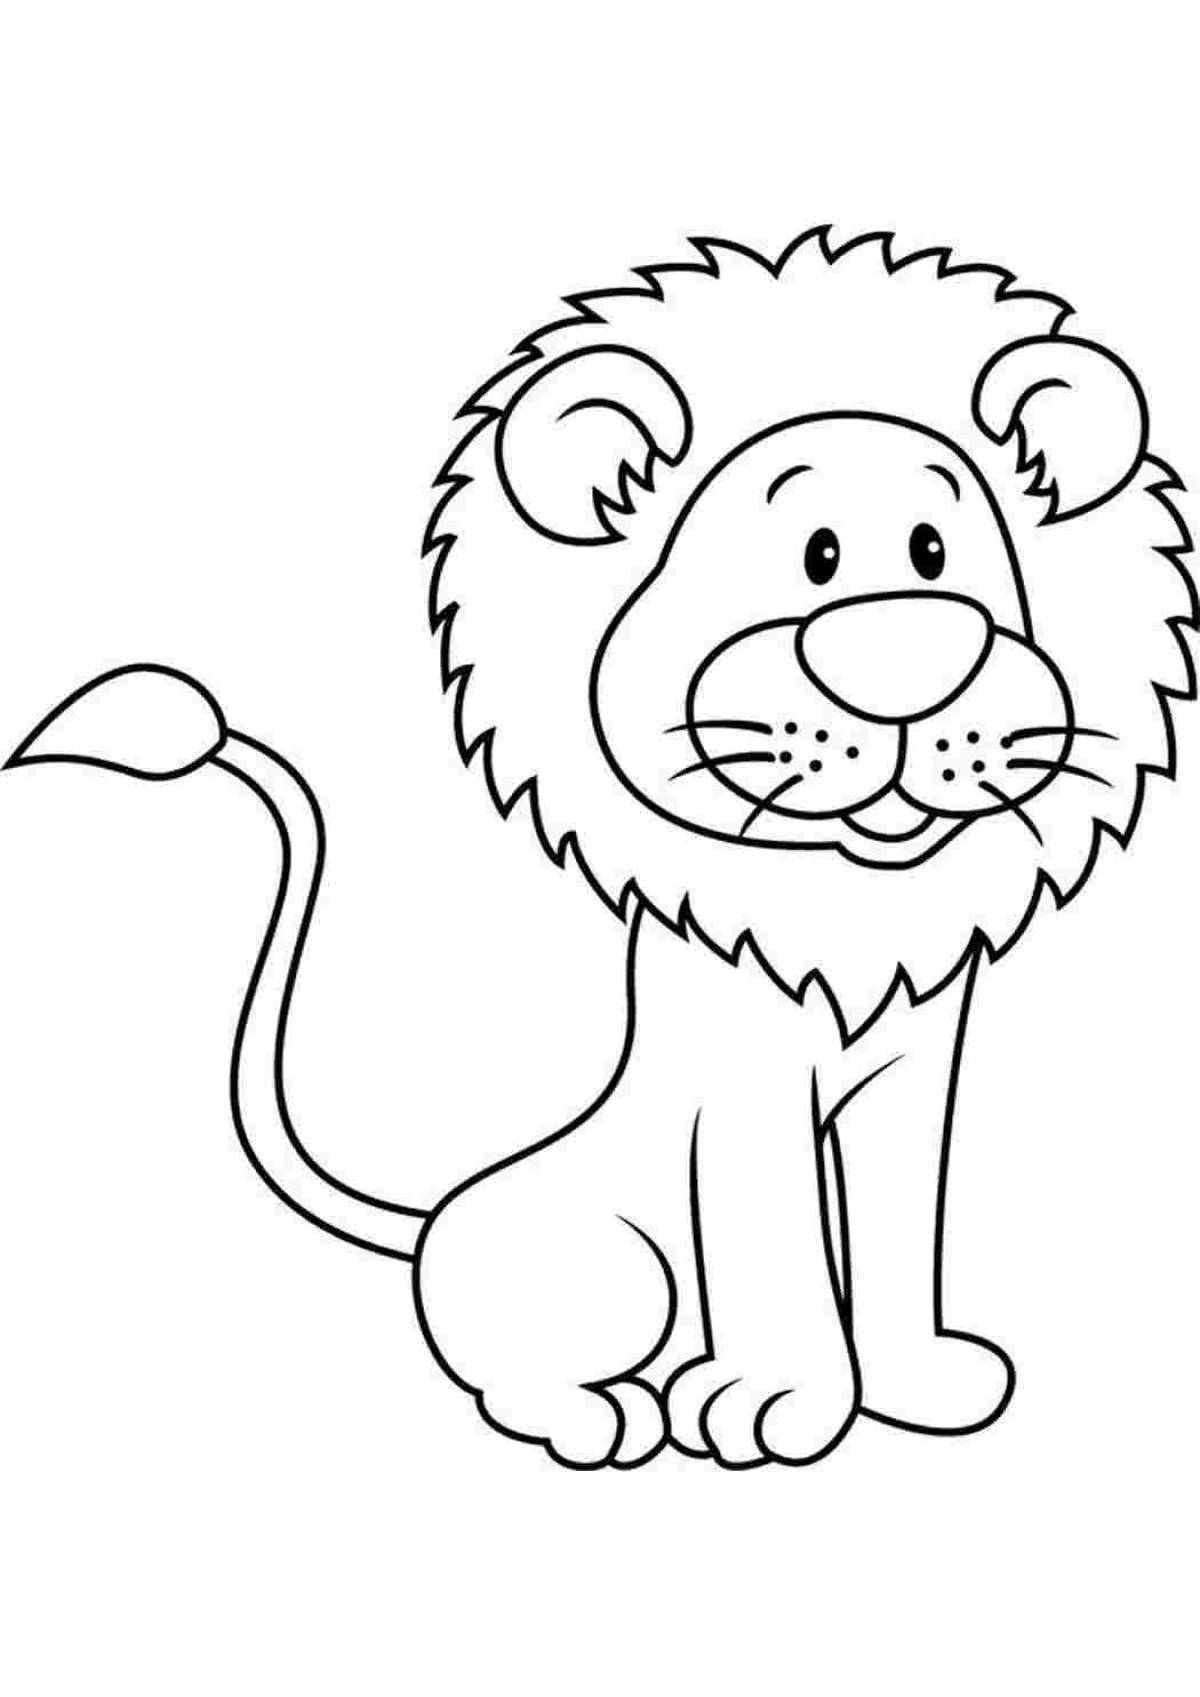 Раскраска радостный лев для детей 3-4 лет